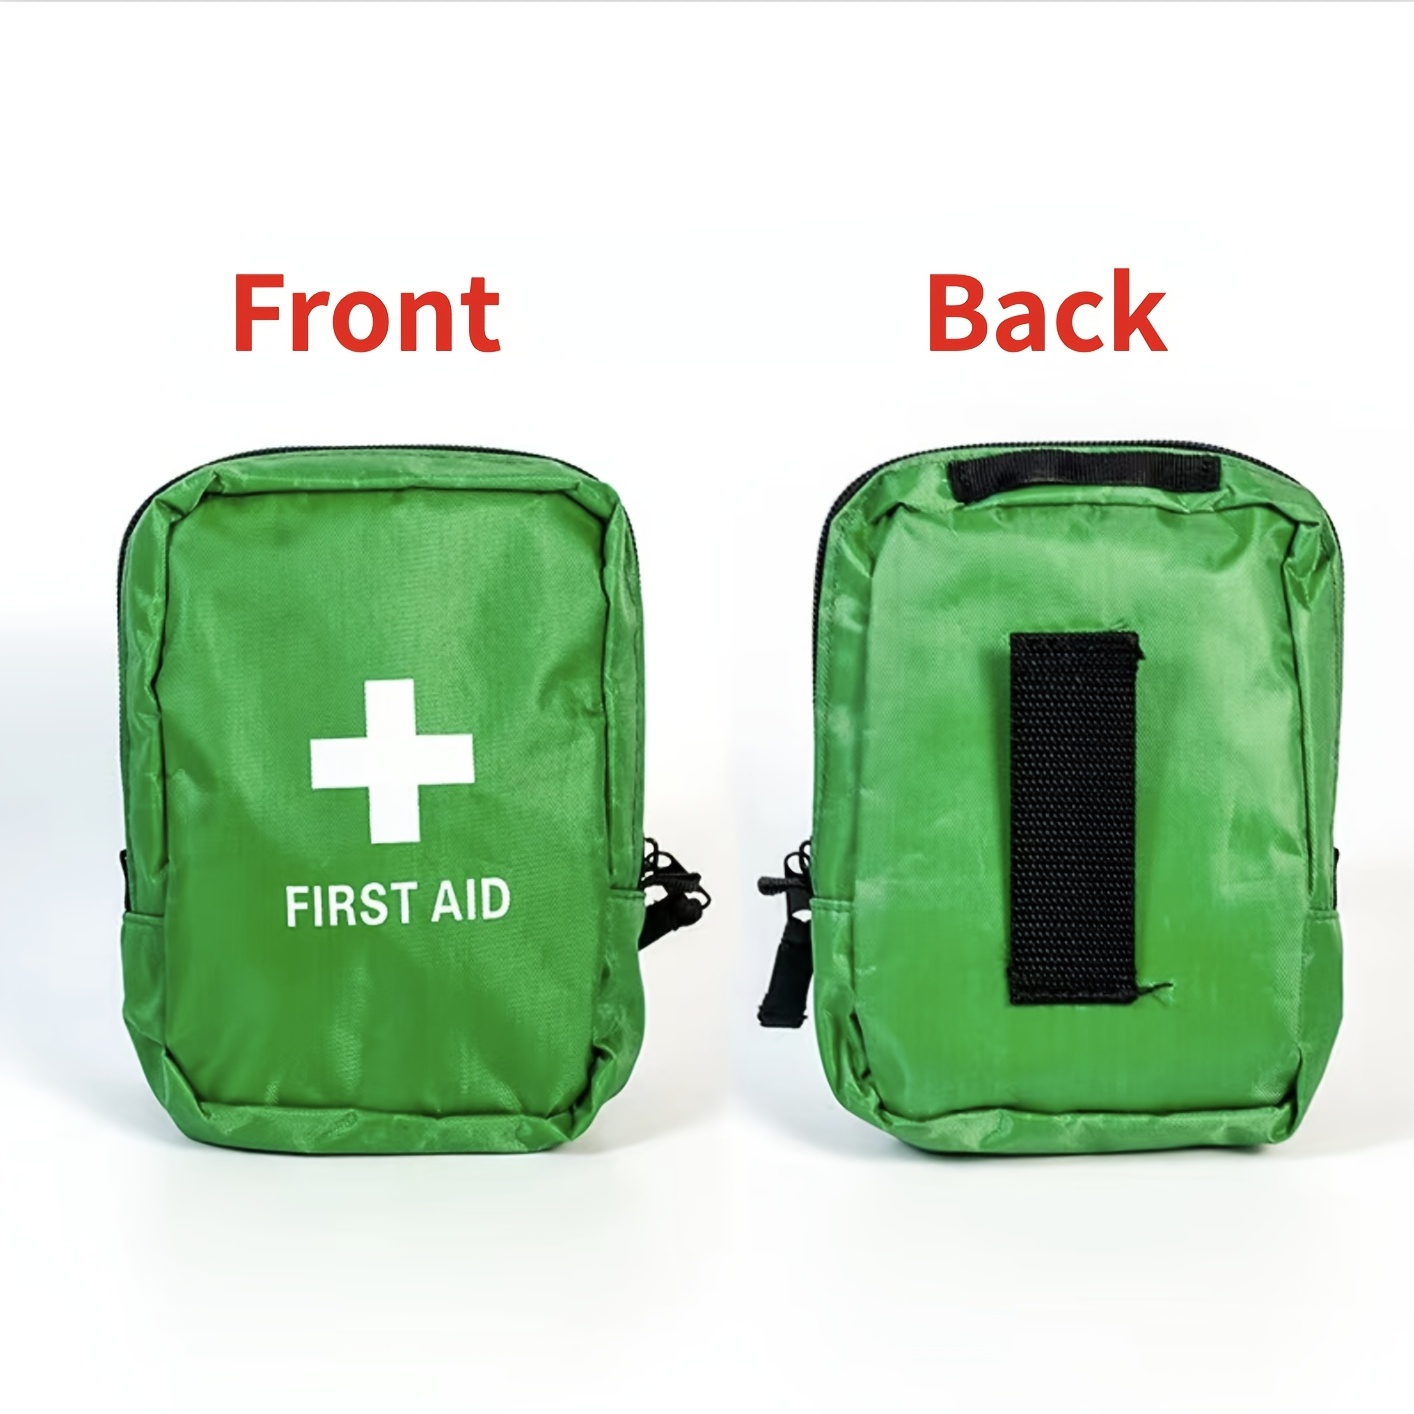 Kompaktes Erste-Hilfe-Set für alle Lebenslagen